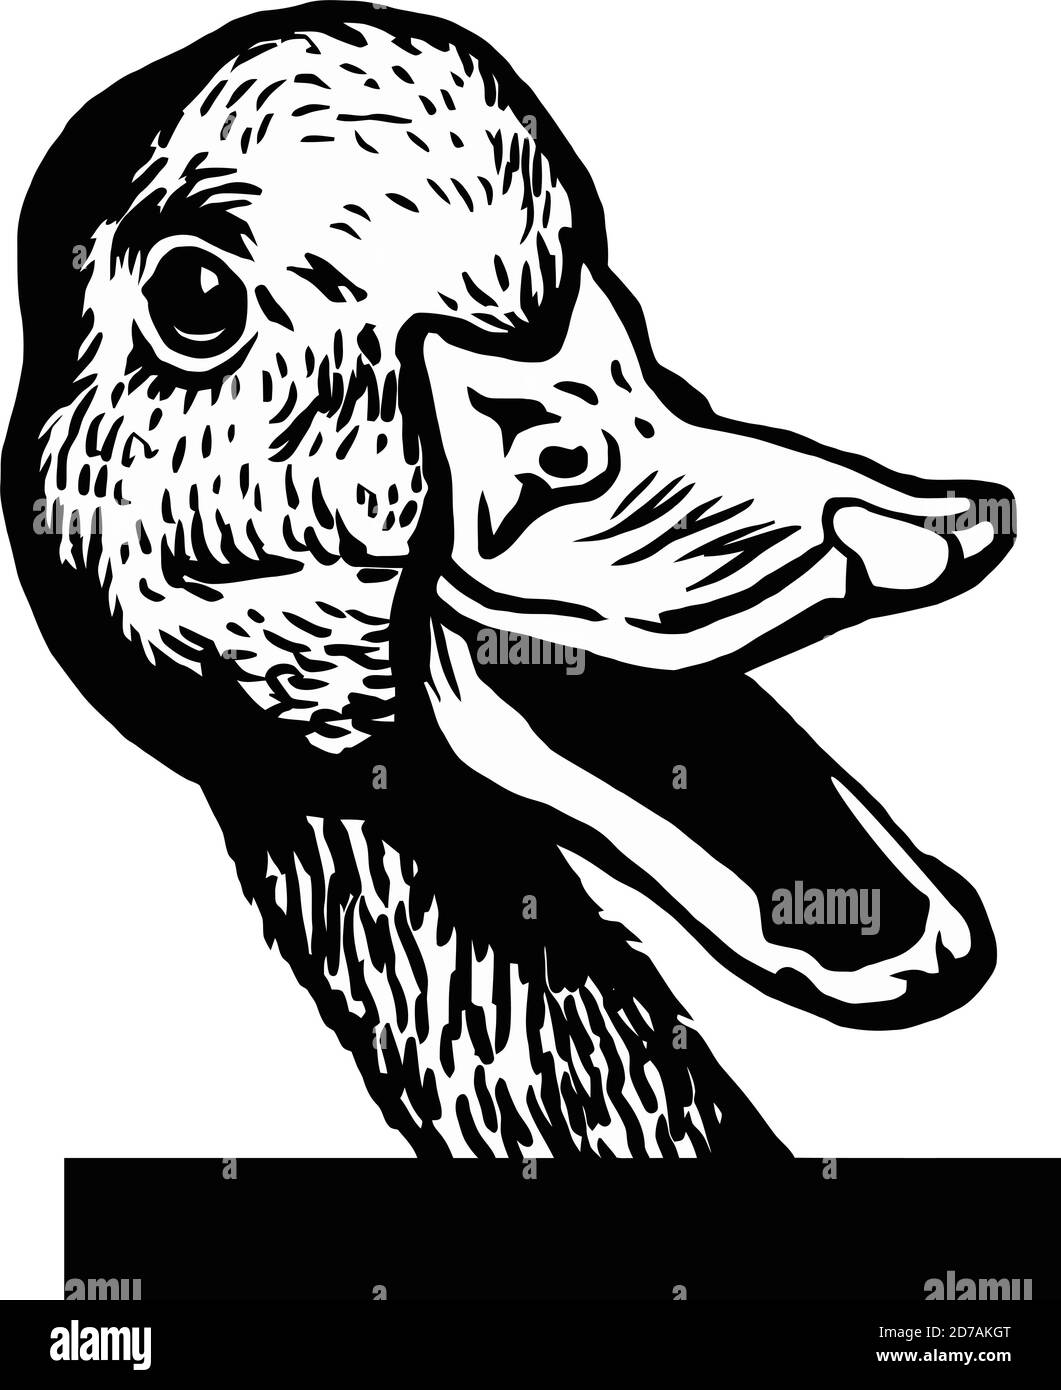 Canard à pécher - canard gai qui se fait un pécher - tête de face isolé sur le brut vecteur blanc Illustration de Vecteur